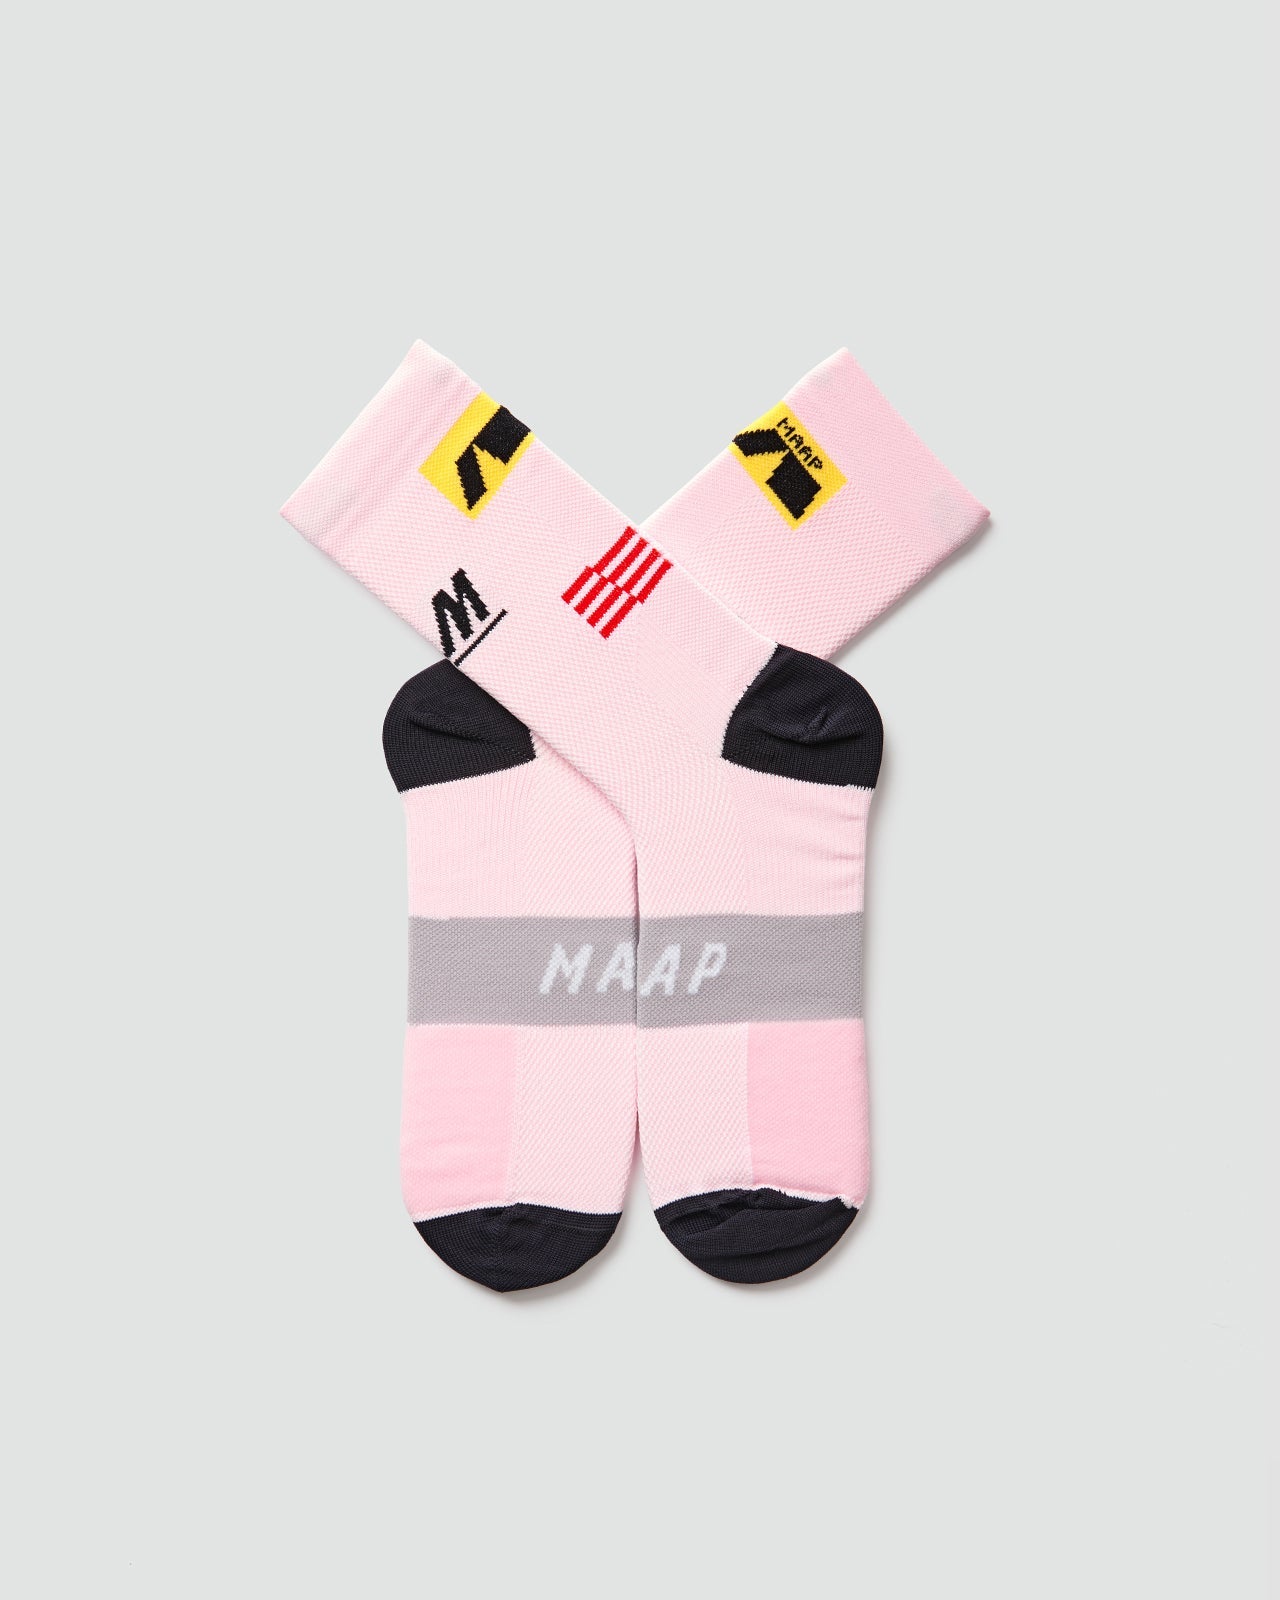 Axis Socks - Pale Pink